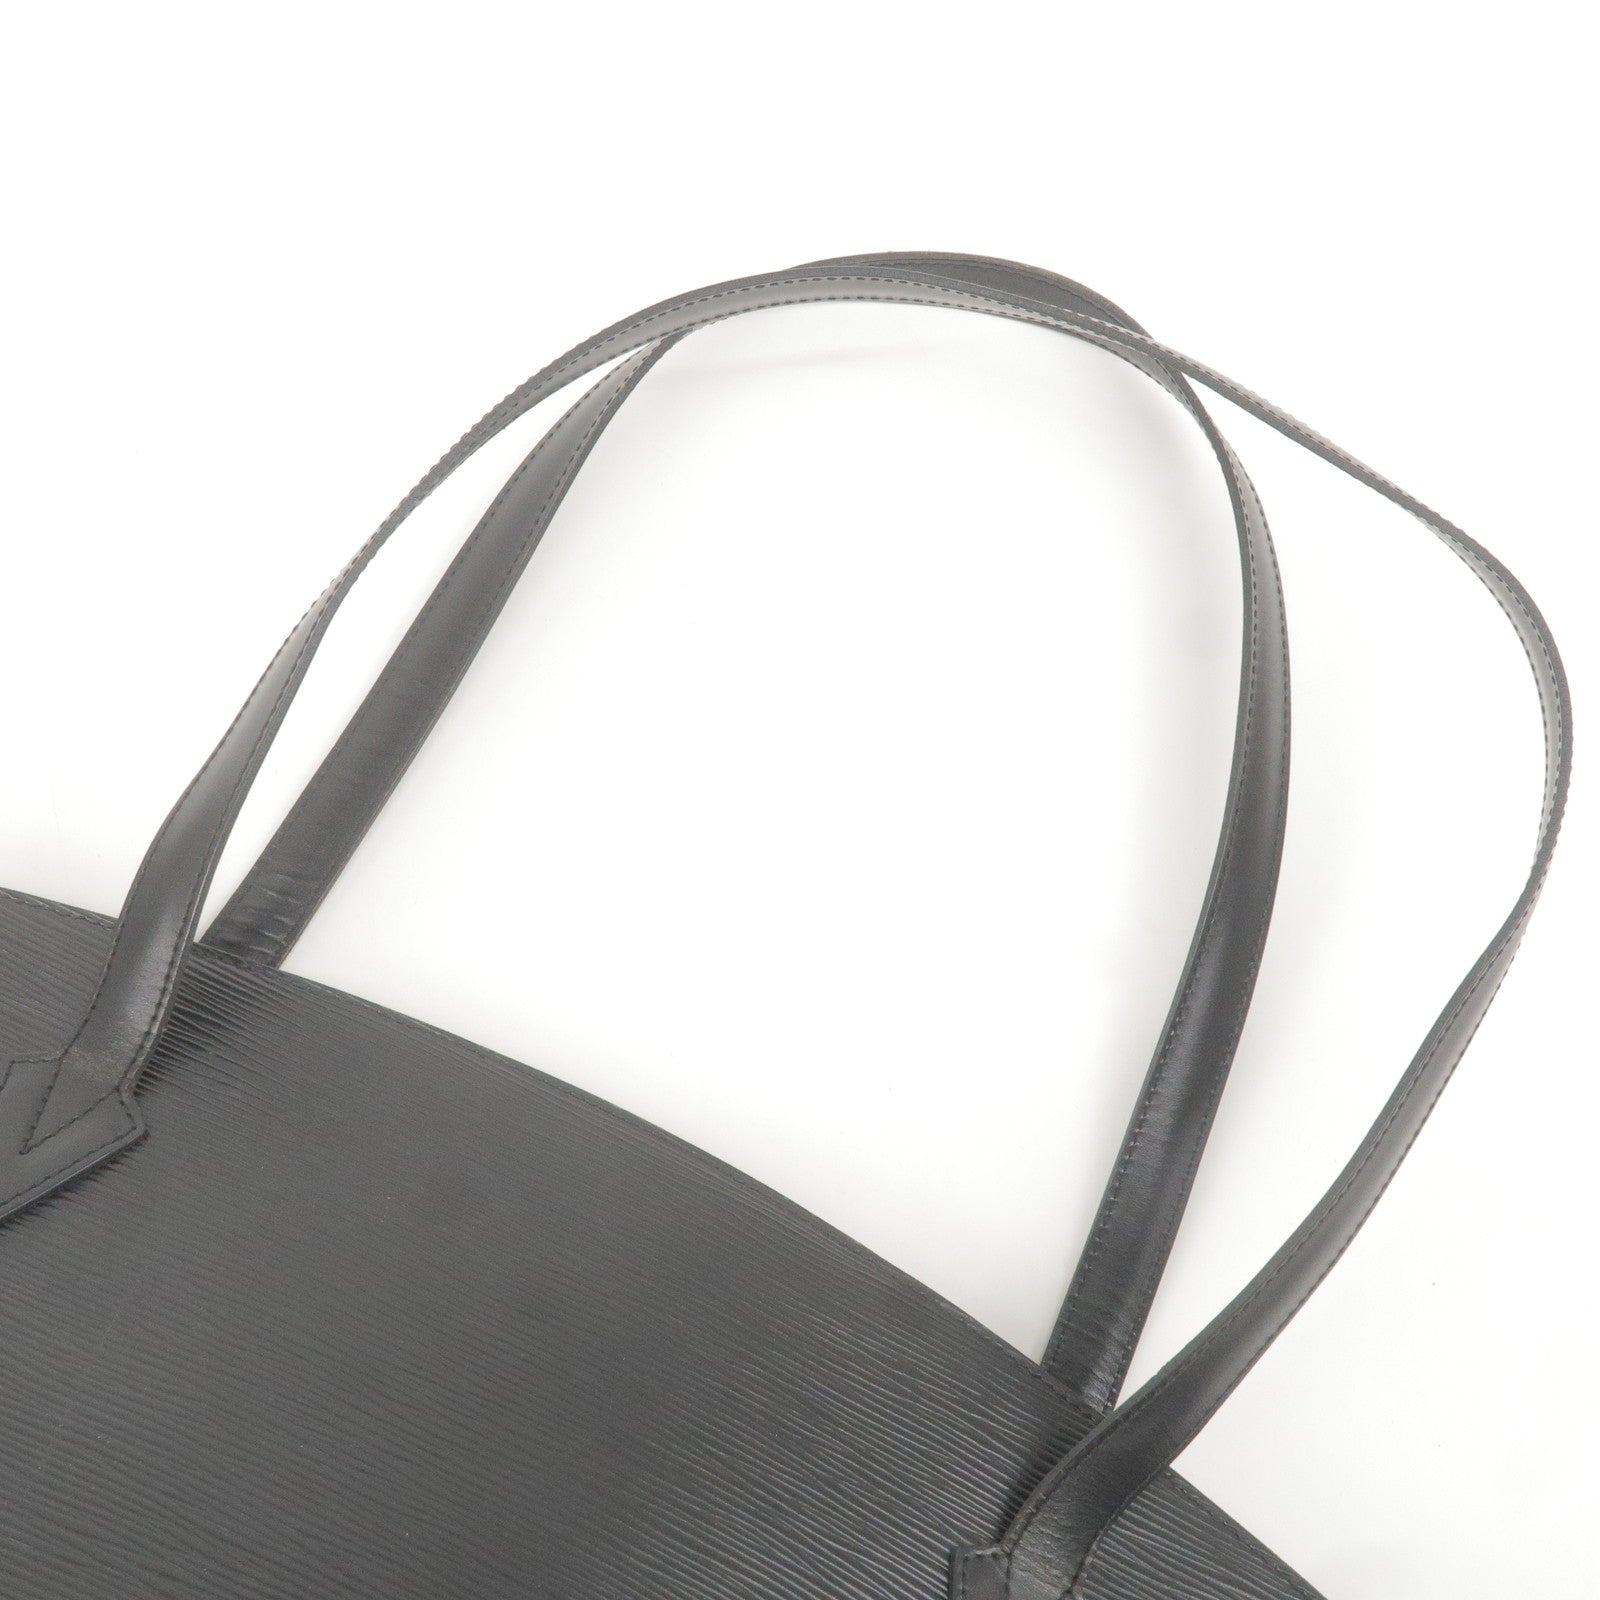 Louis Vuitton Epi Leather Saint Jacques GM Bag - Consigned Designs